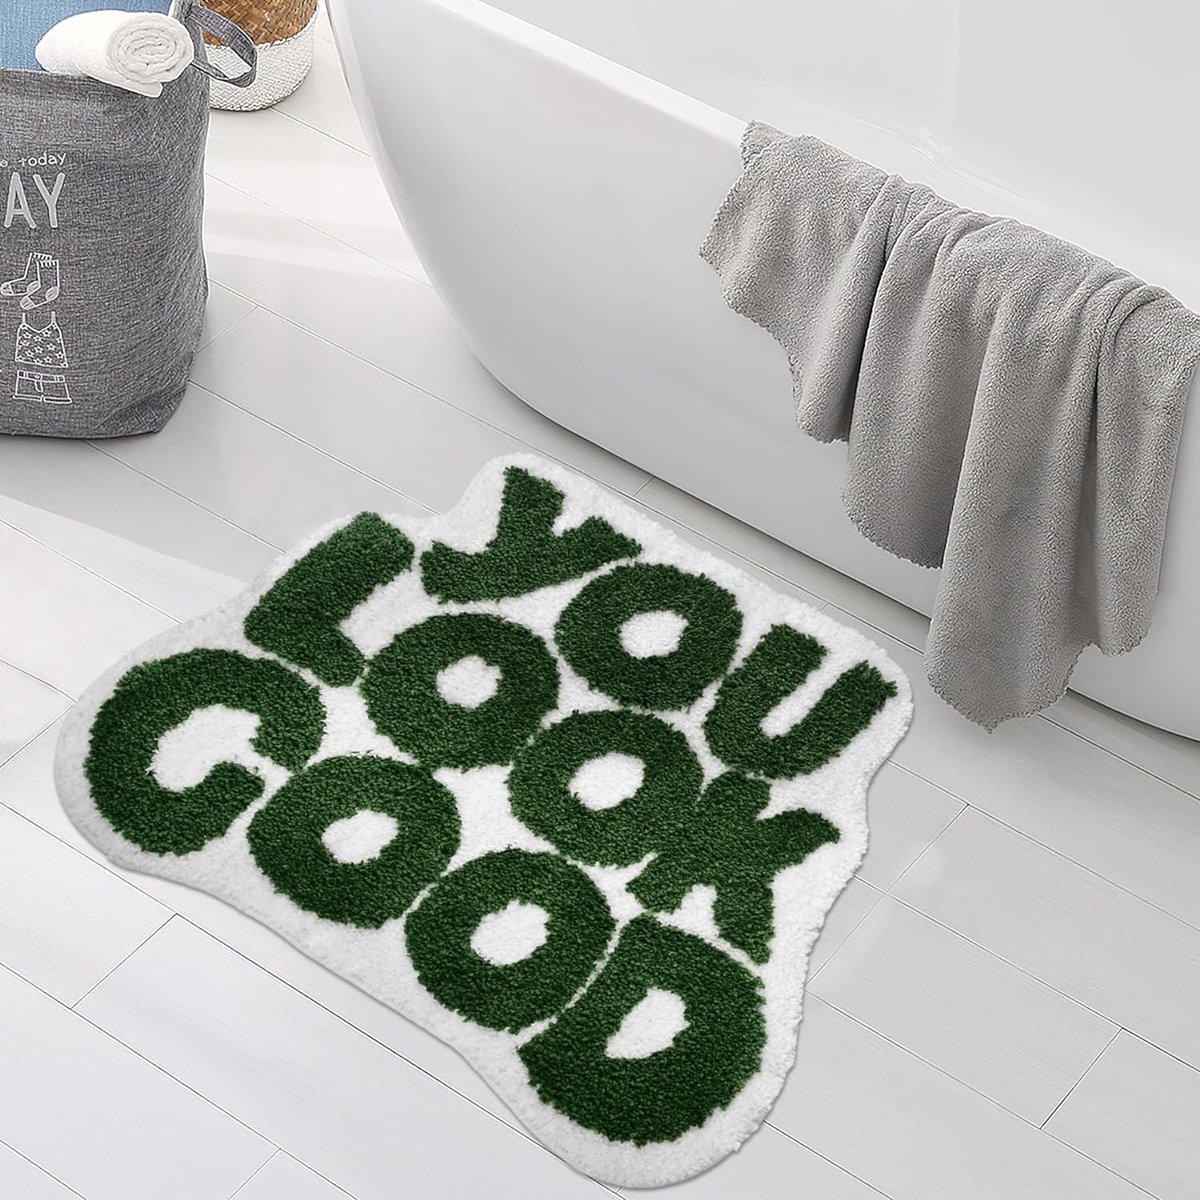 Badmat antislip groen badkamertapijt grappig schattig badmatten microvezel wasbaar absorberend douchetapijt 64 x 54 cm (groen)